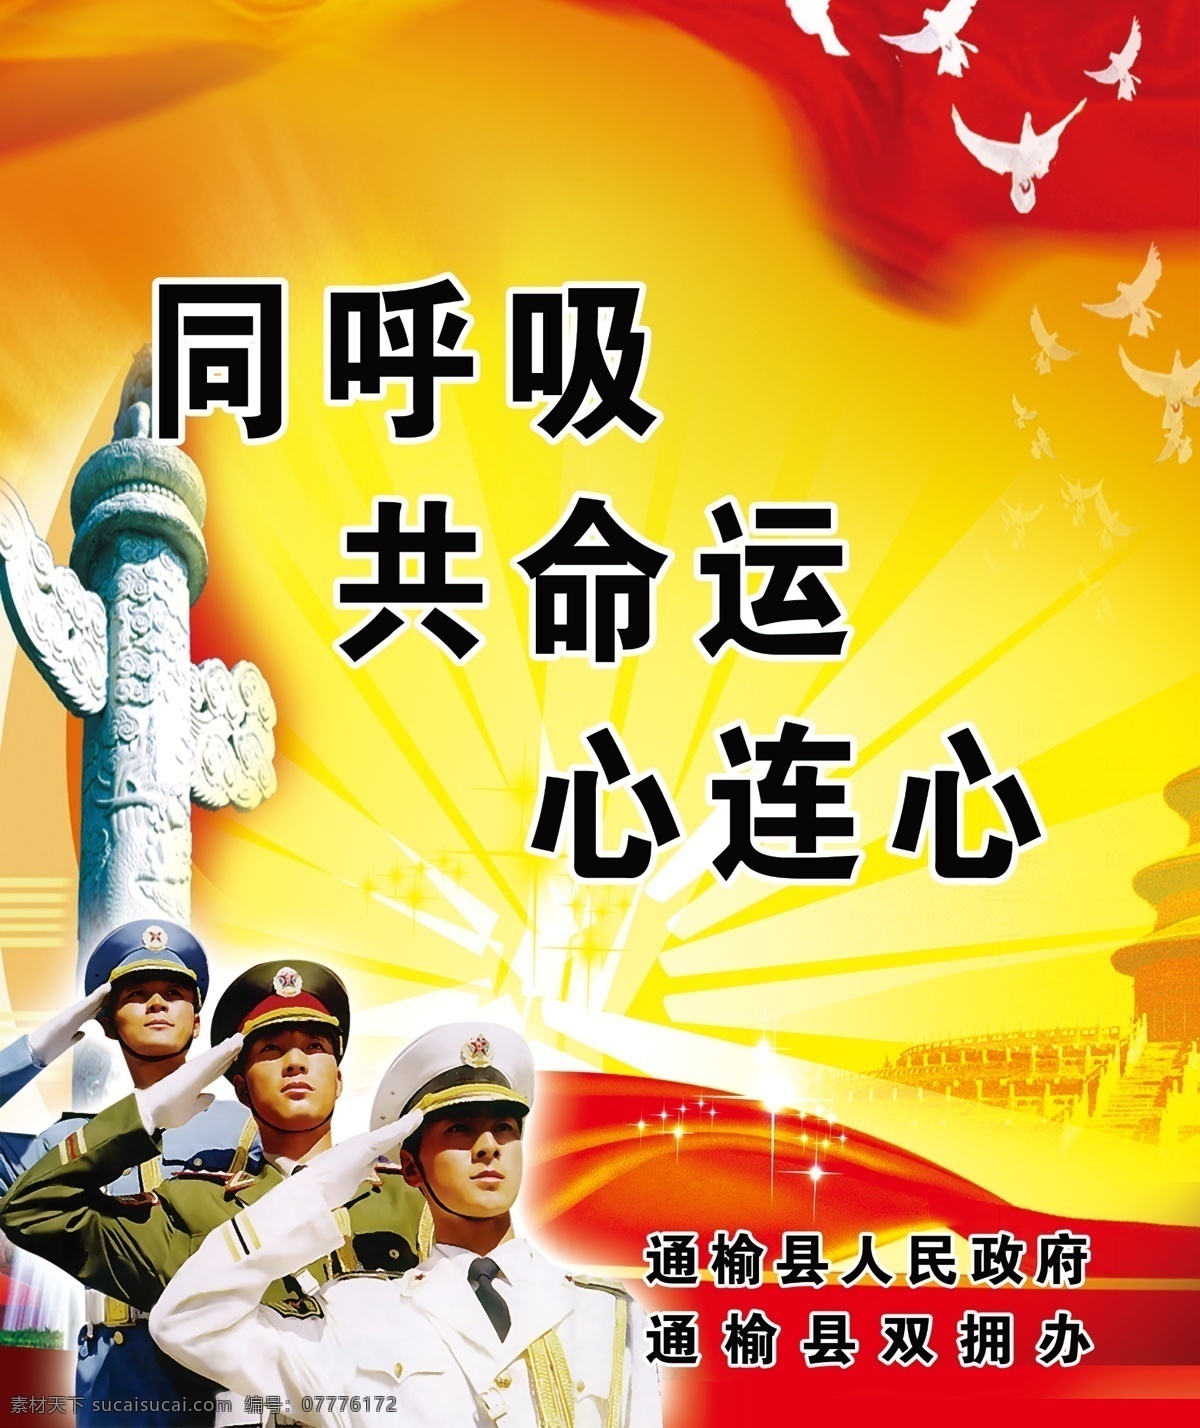 拥军宣传语 党建背景 拥军 海陆空军 三个军人 红色背景 psd分层 展板模板